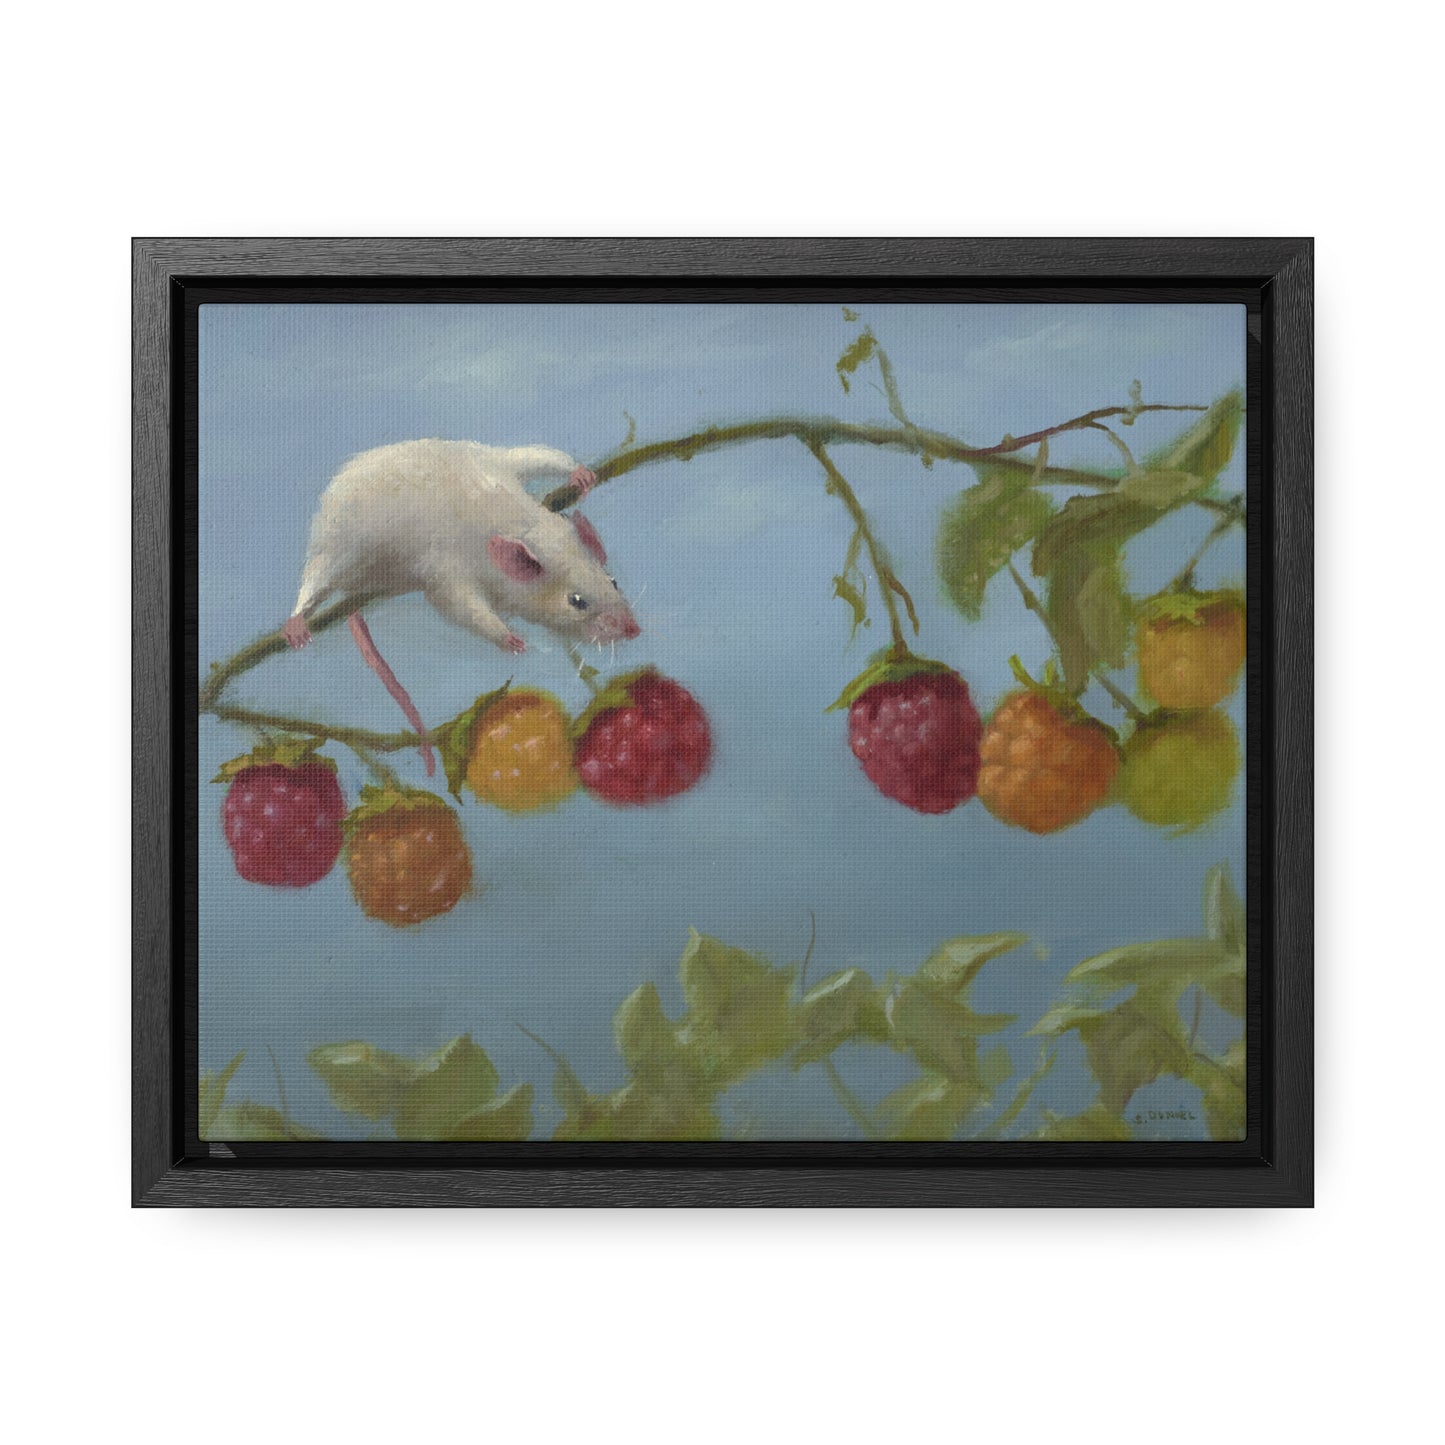 Stuart Dunkel: "Berry Picker" - Framed Canvas Reproduction